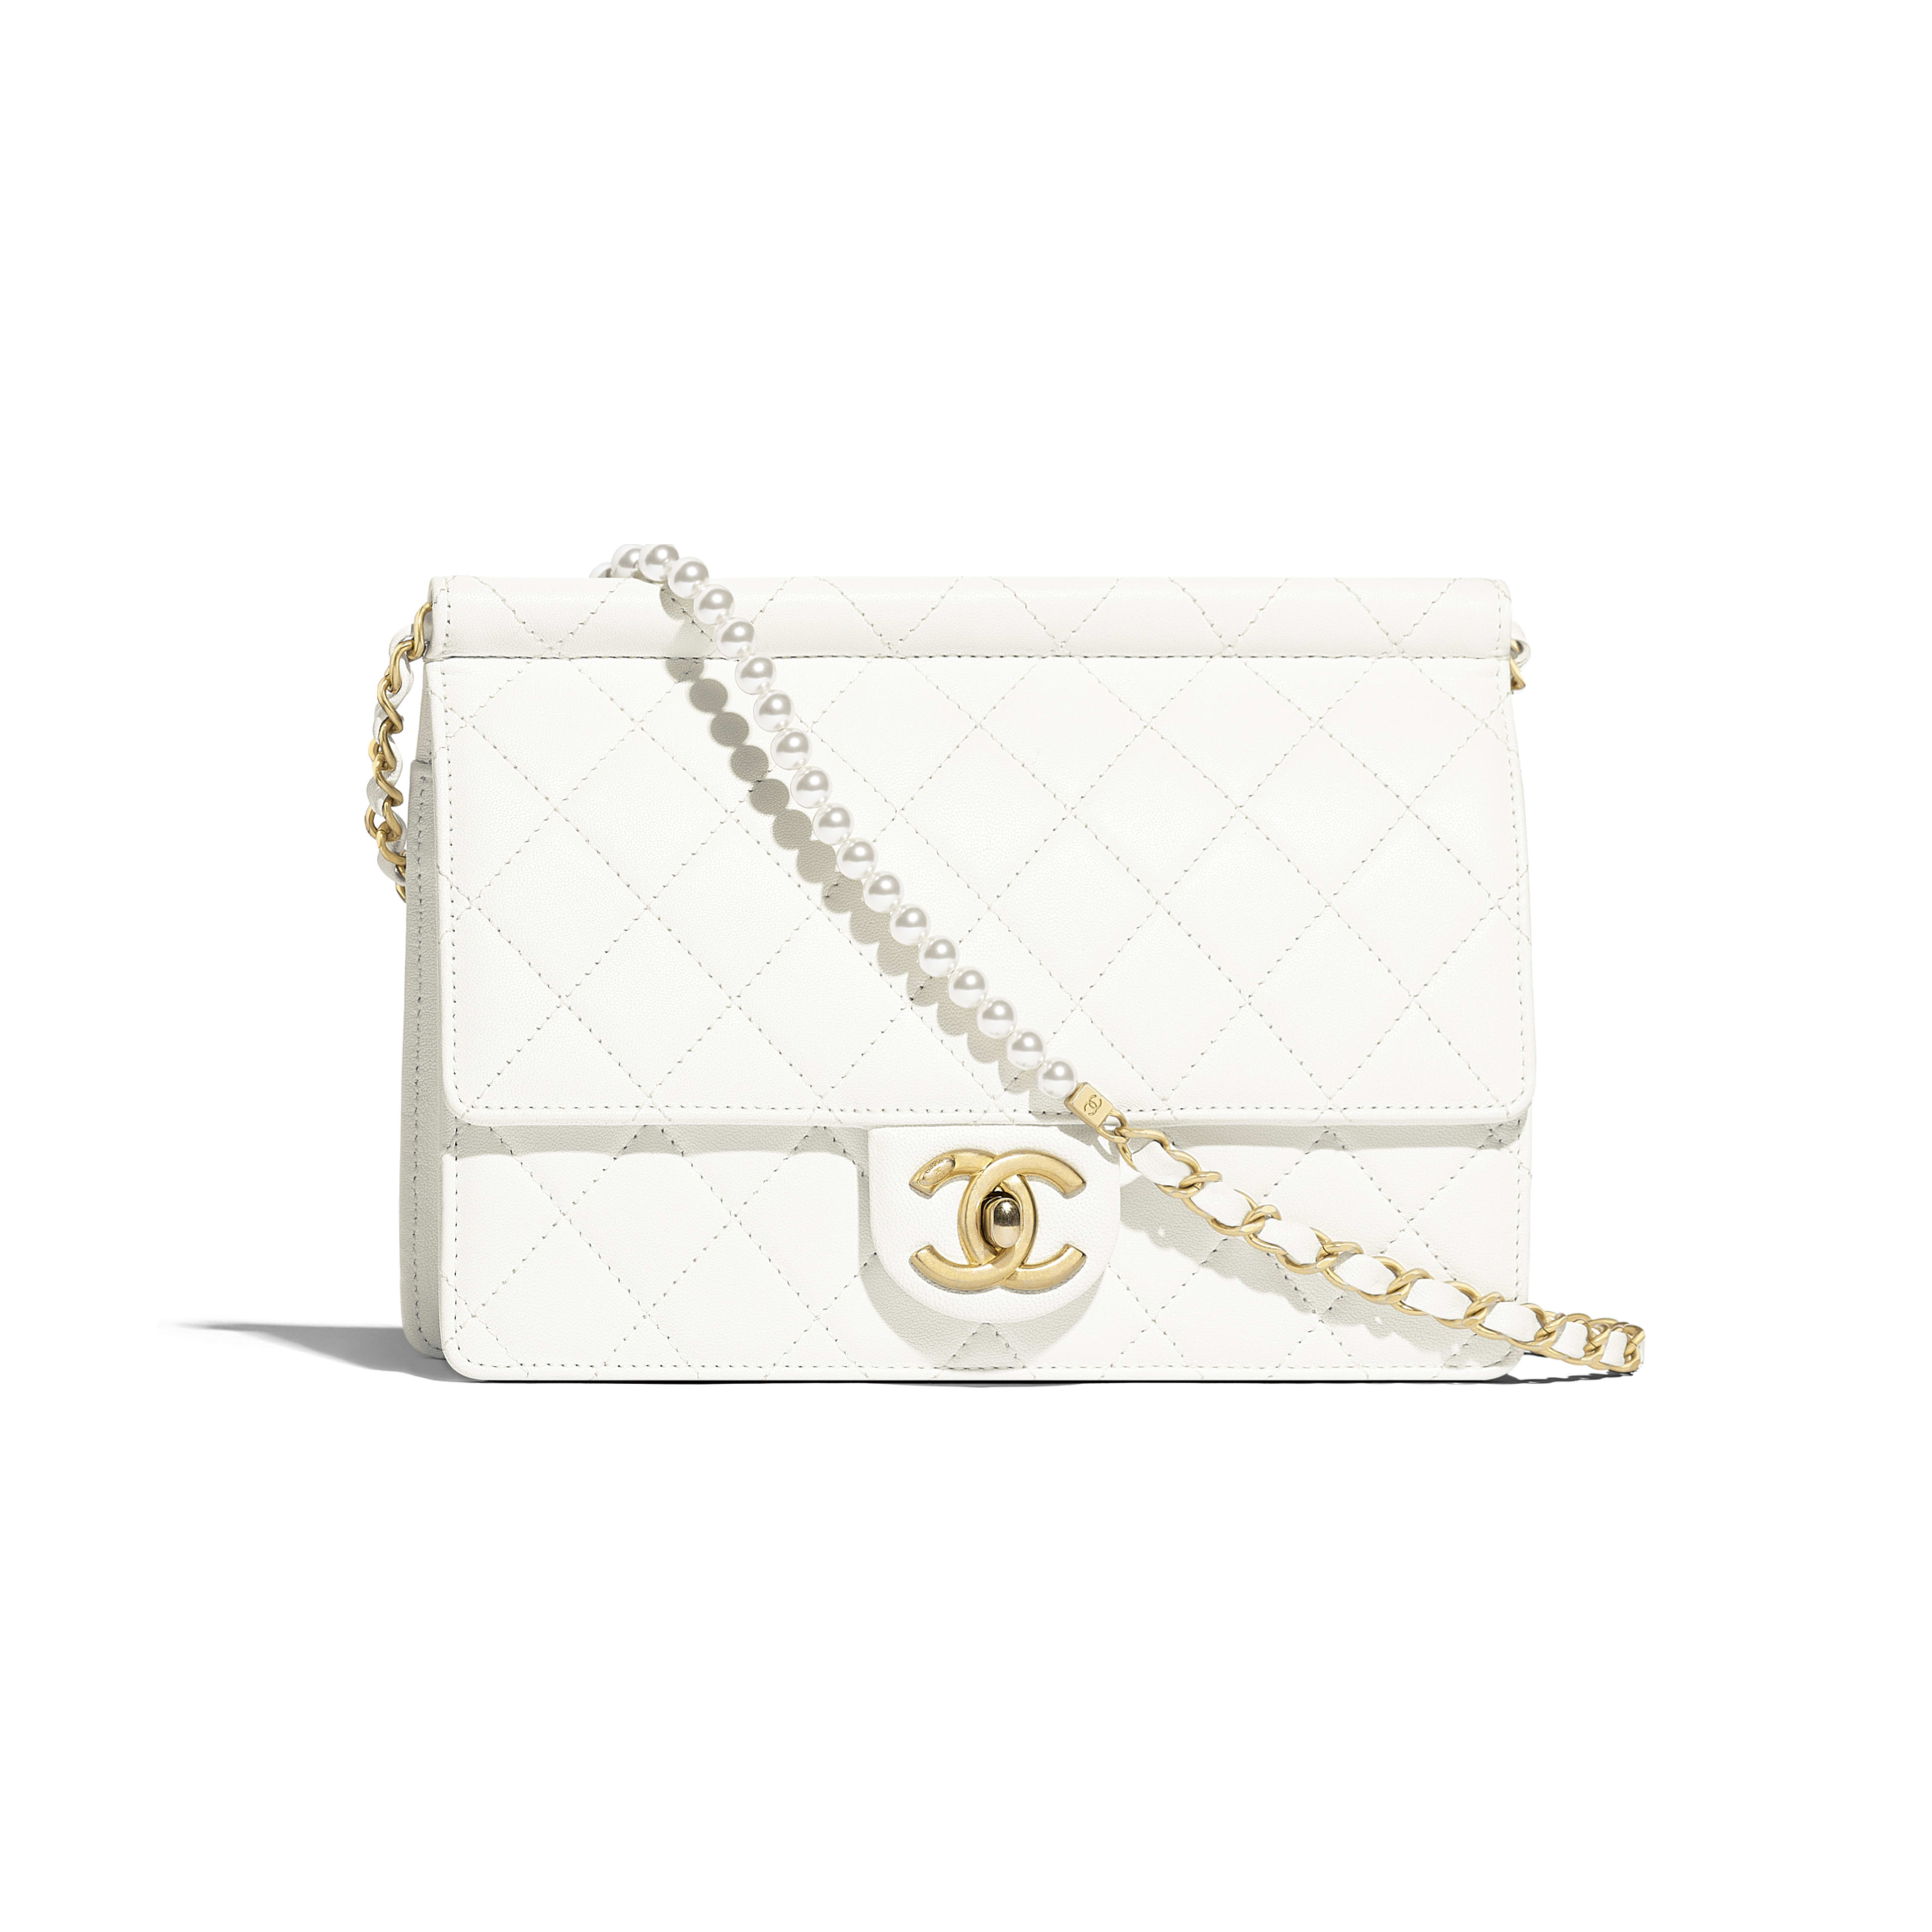 Chanel white flap bag